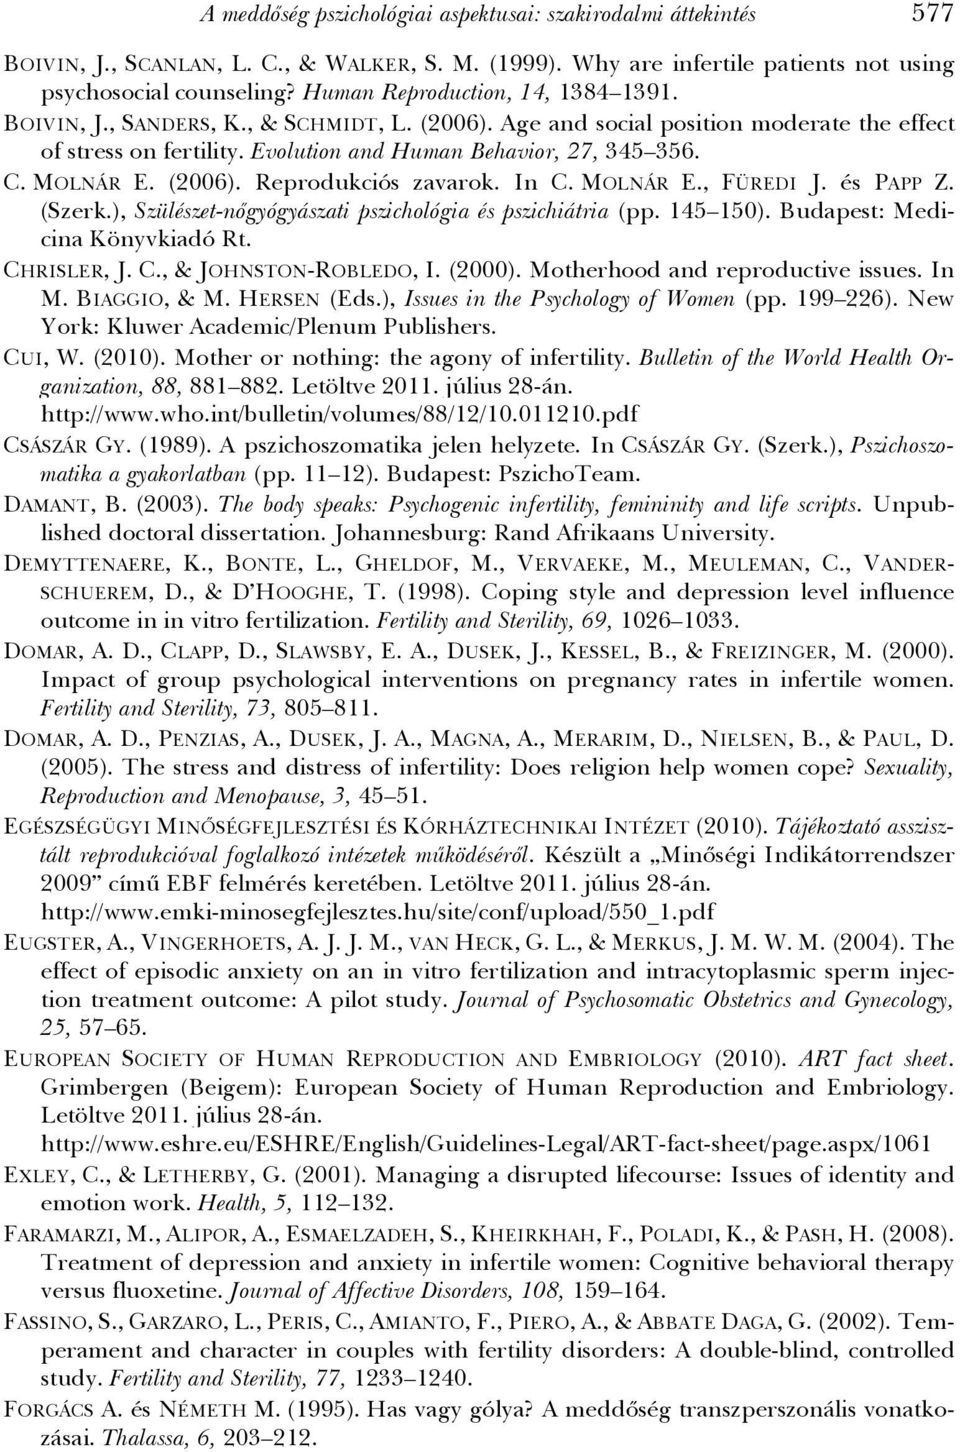 MOLNÁR E. (2006). Reprodukciós zavarok. In C. MOLNÁR E., FÜREDI J. és PAPP Z. (Szerk.), Szülészet-nőgyógyászati pszichológia és pszichiátria (pp. 145 150). Budapest: Medicina Könyvkiadó Rt.